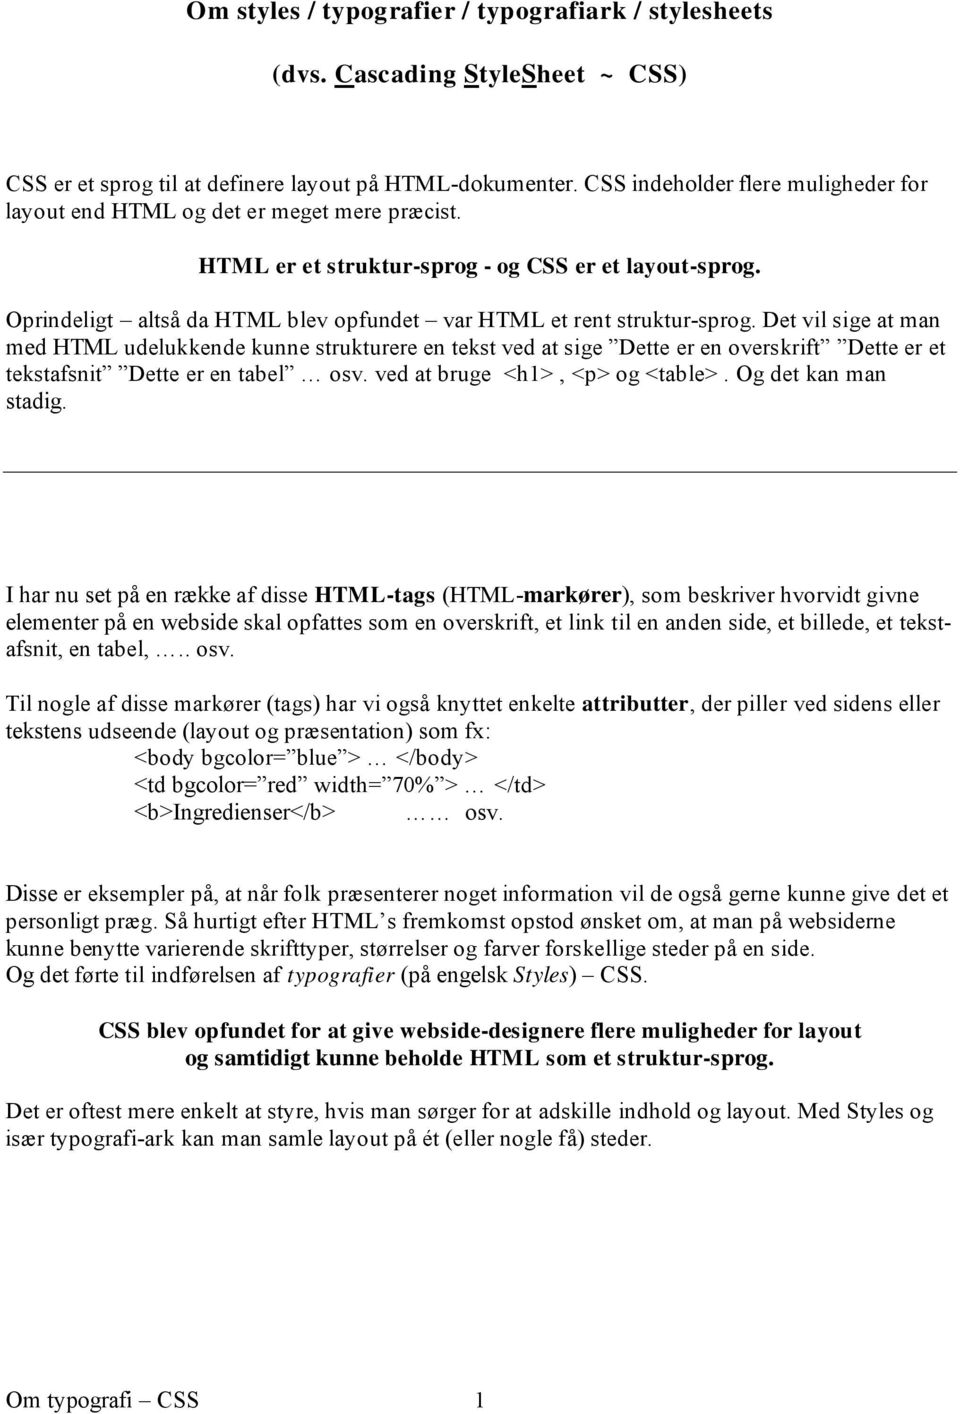 Oprindeligt altså da HTML blev opfundet var HTML et rent struktur-sprog.